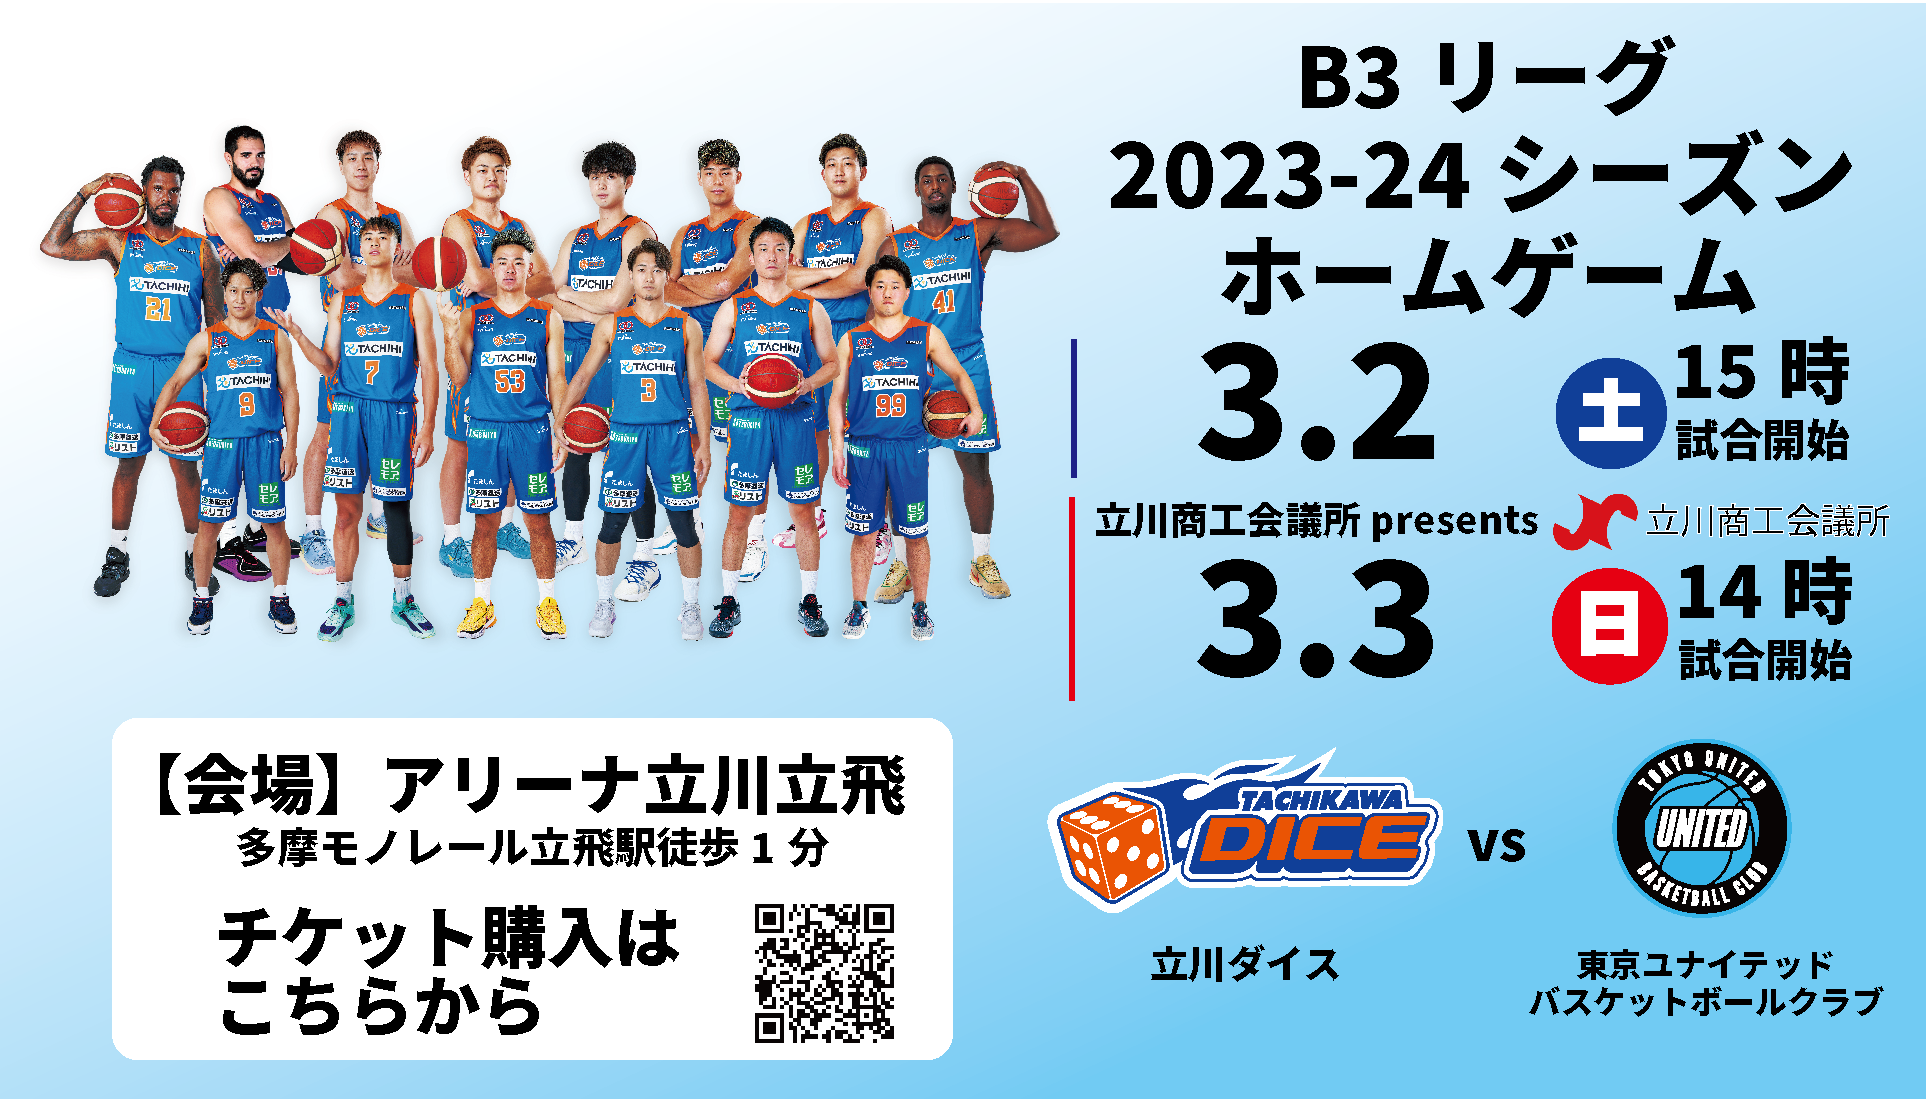 【3月2日(土) 3日(日)試合情報】2023-24シーズンB3リーグ東京ユナイテッドバスケットボールクラブ